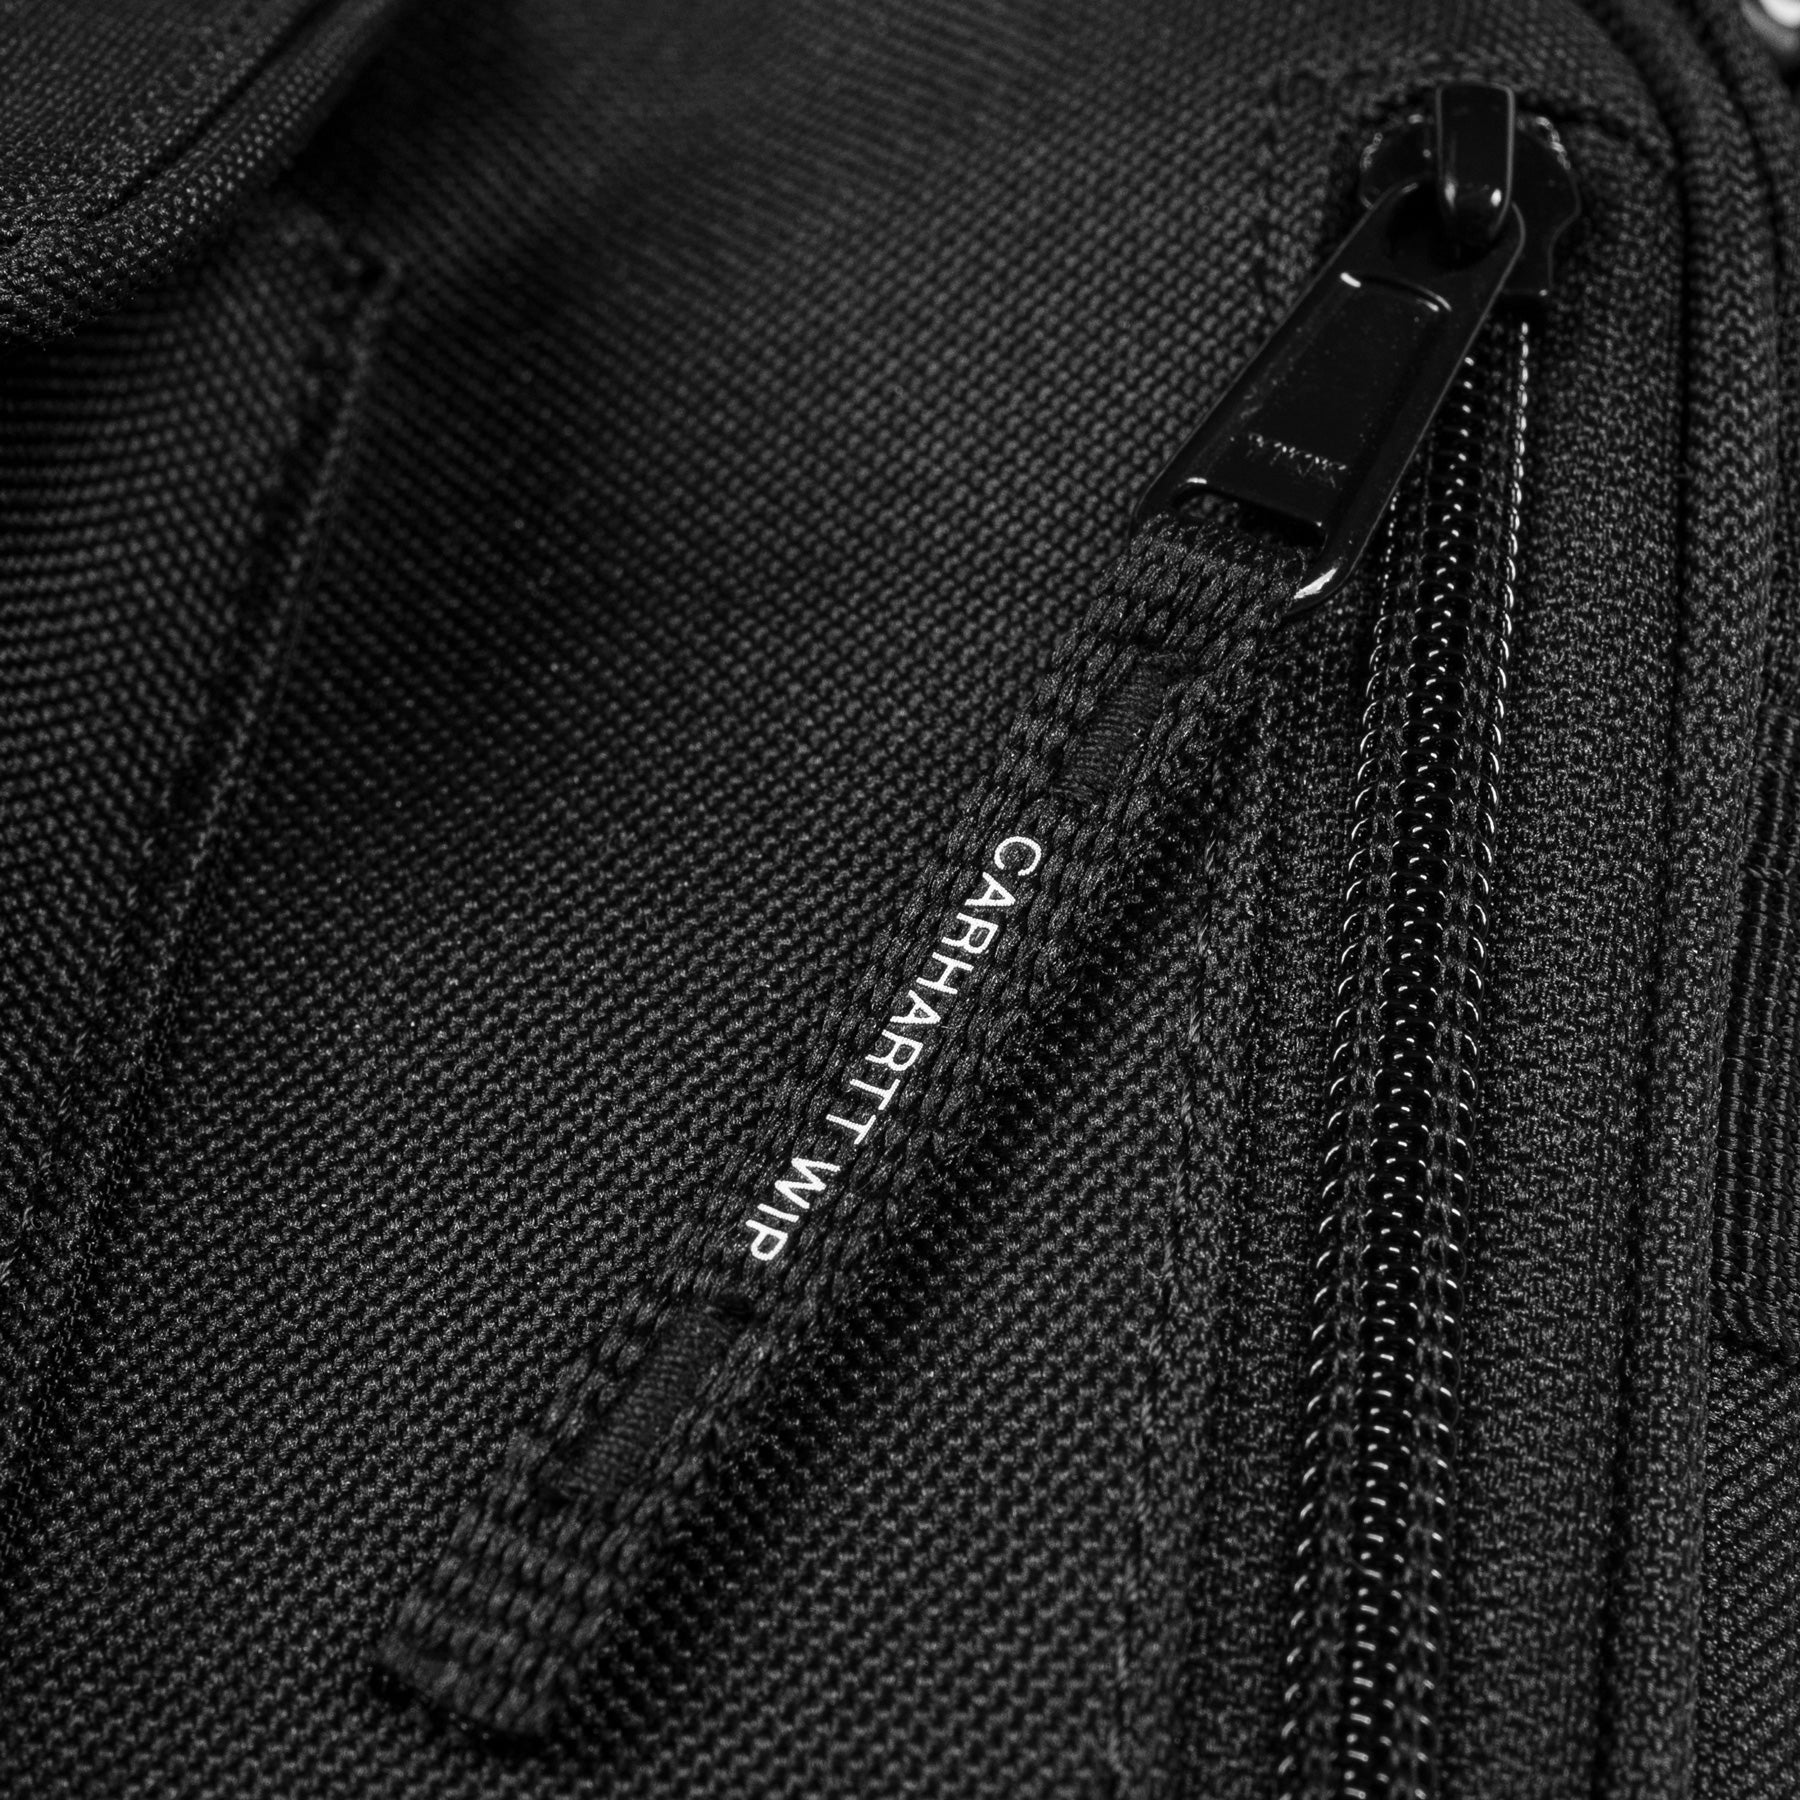 Carhartt WIP Essentials Bag, Small Black. Foto de detalhe do fecho.